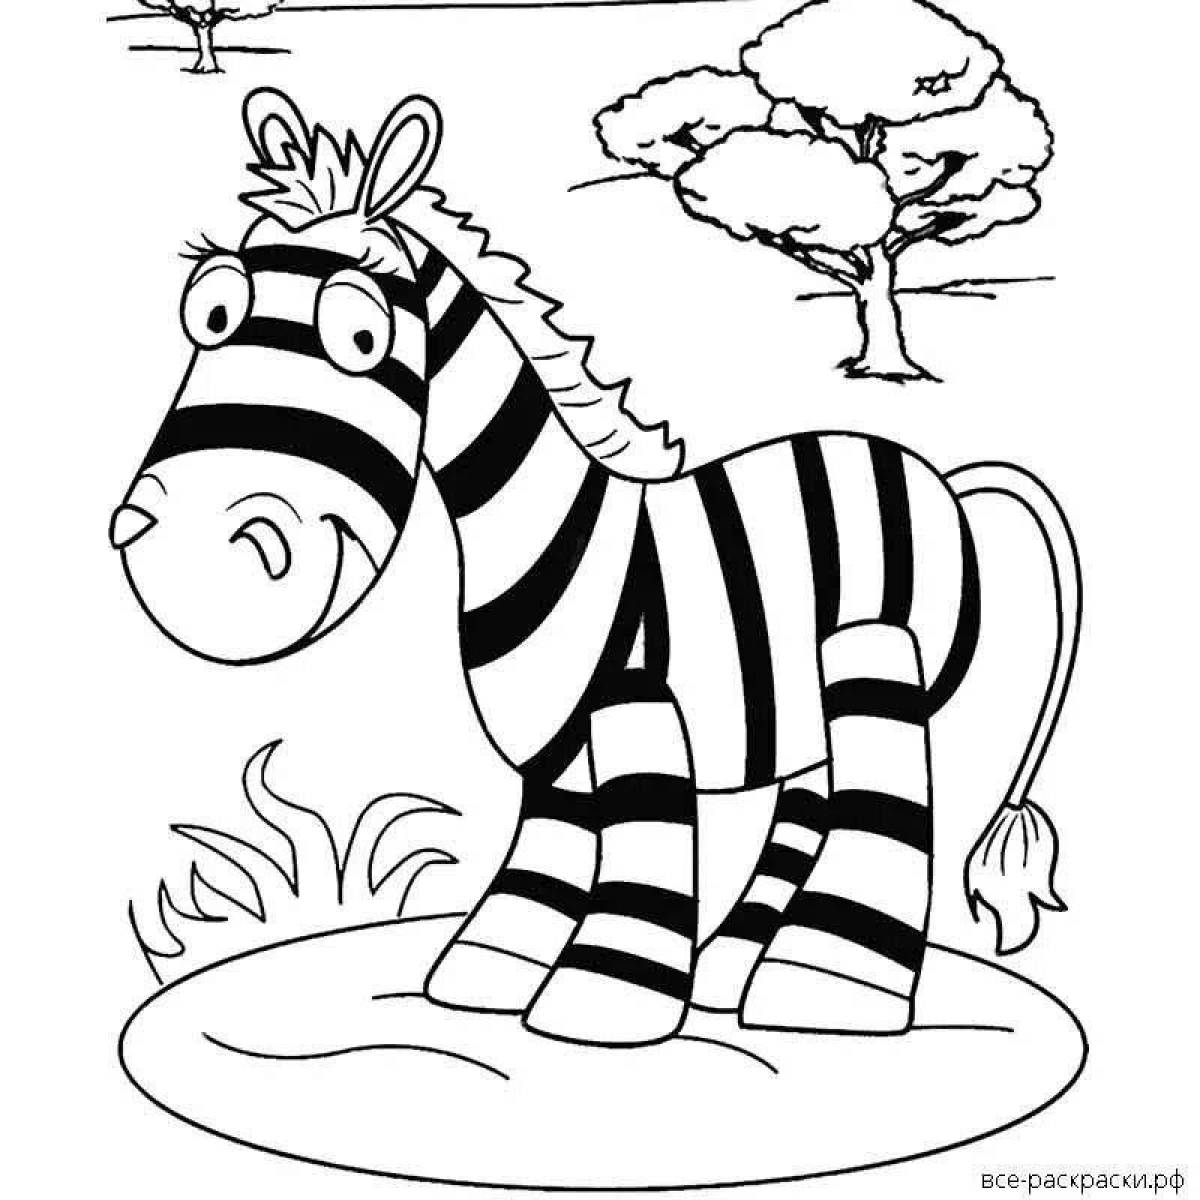 Beautiful checkered zebra